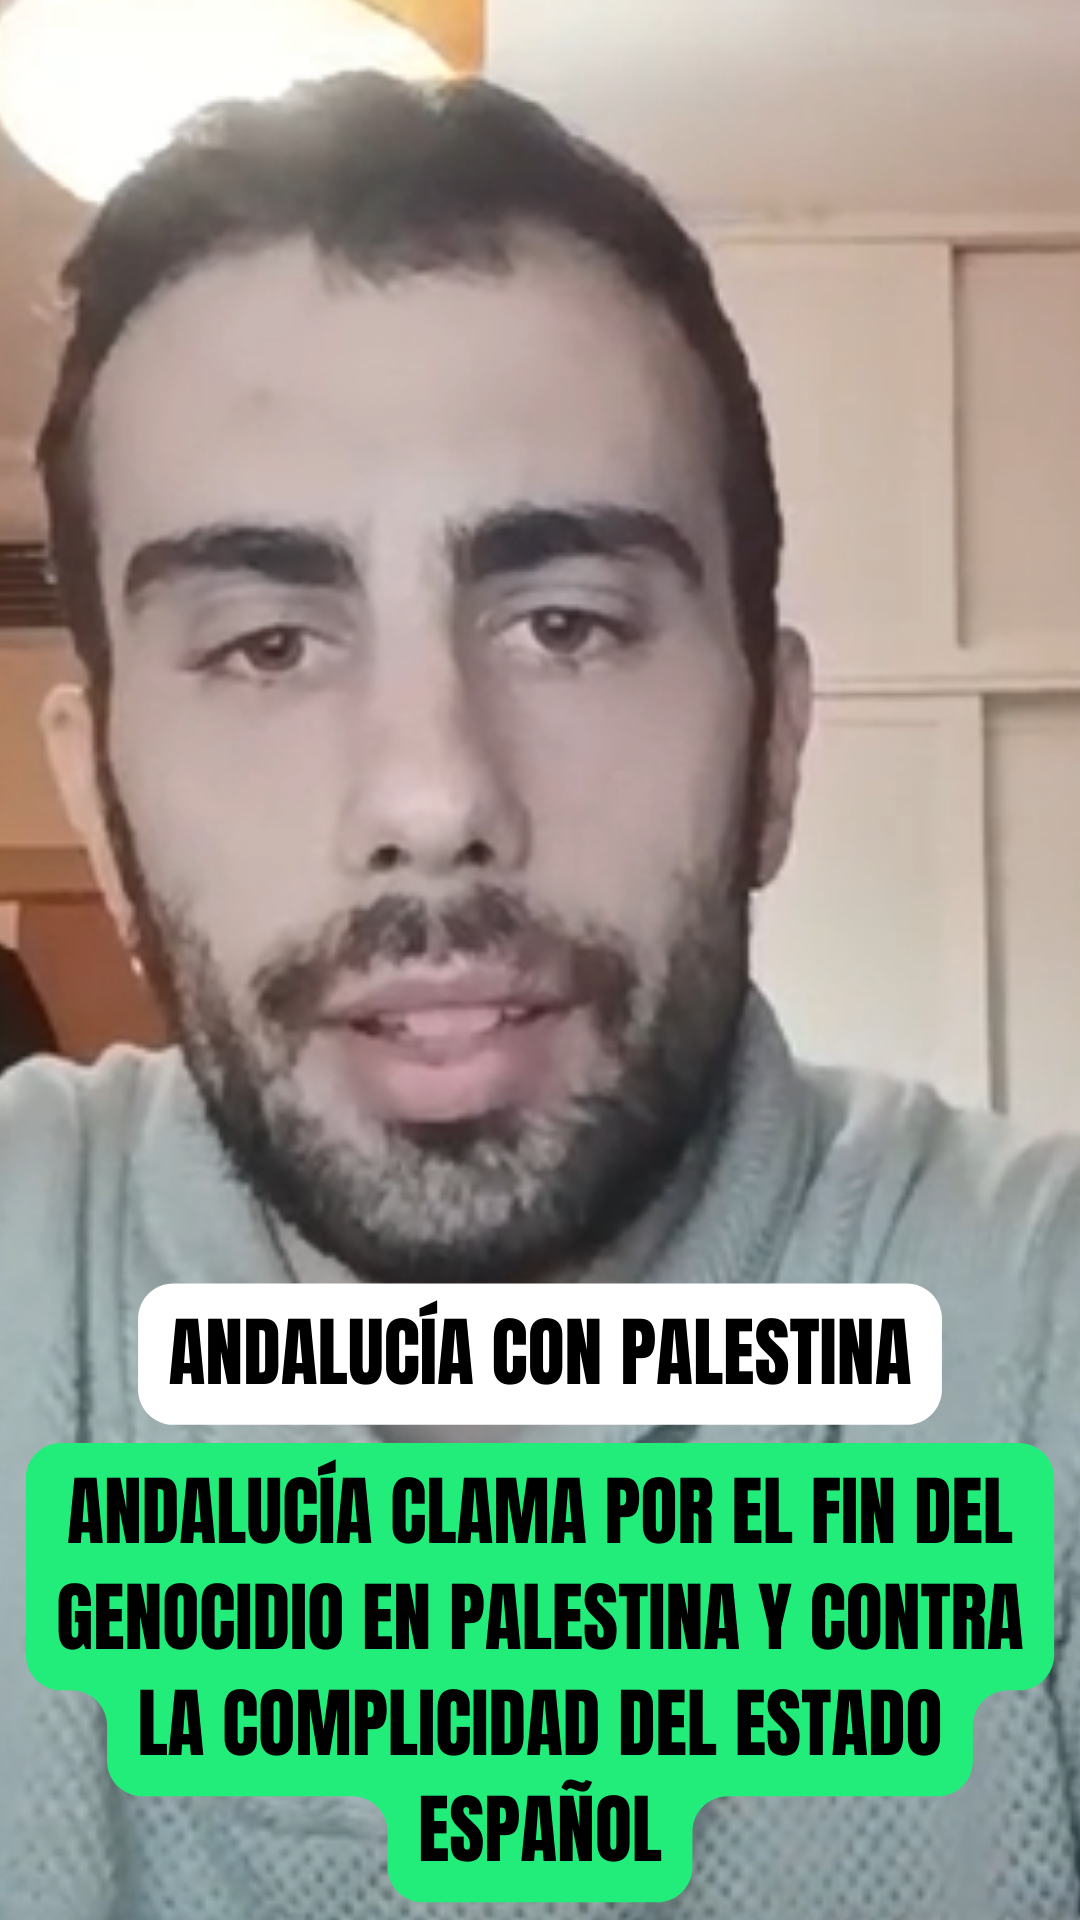 Opinión de Manuel Recio, asesor jurídico: "Andalucía con Palestina".